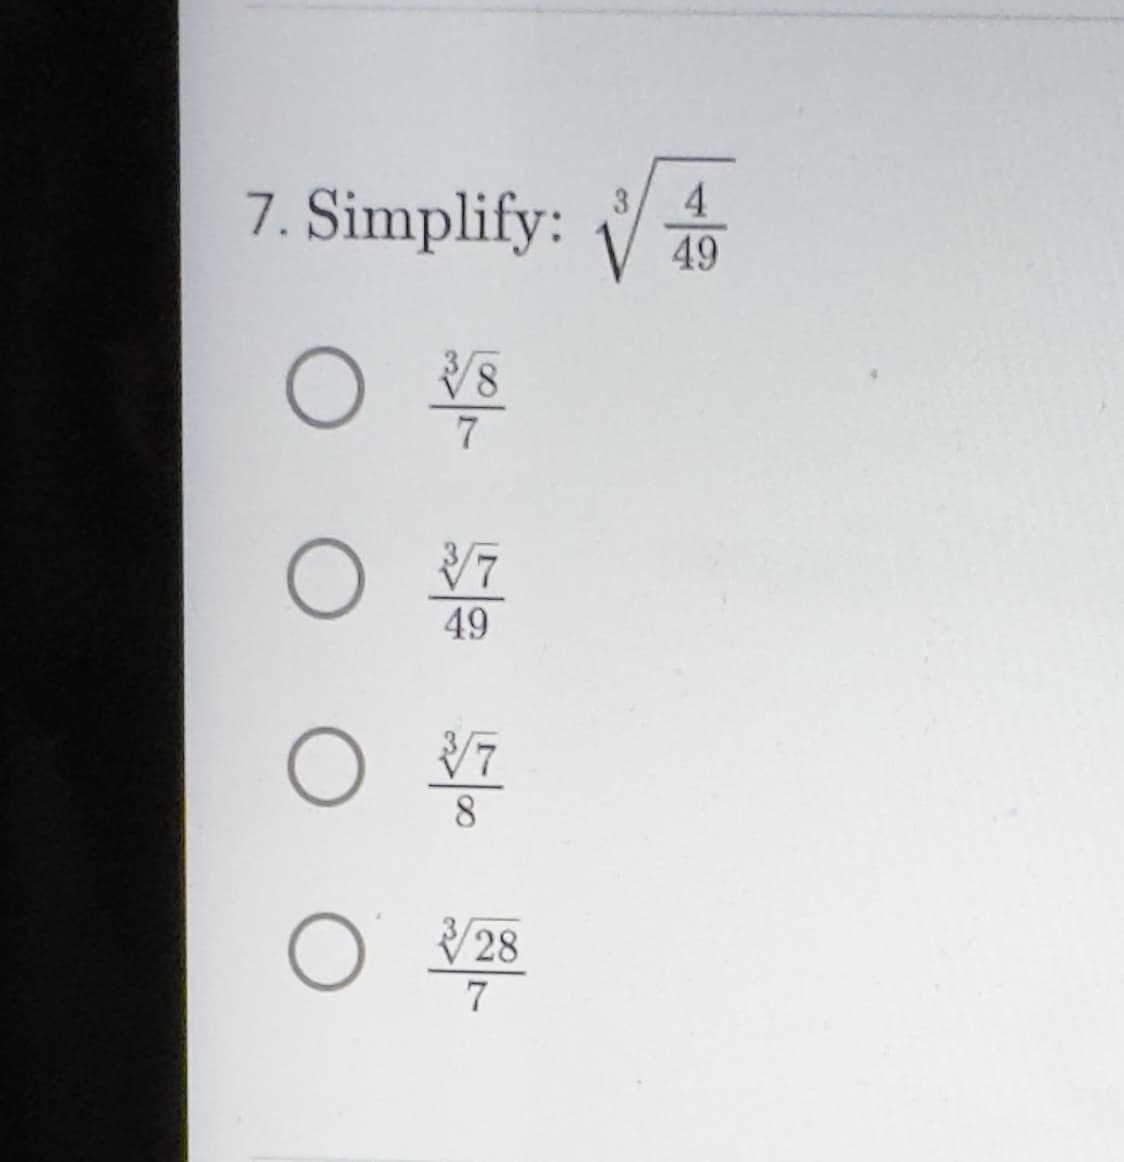 7. Simplify:
O
8
7
0 7
49
O
ㅇ
3/7
8
3/28
7
4
49